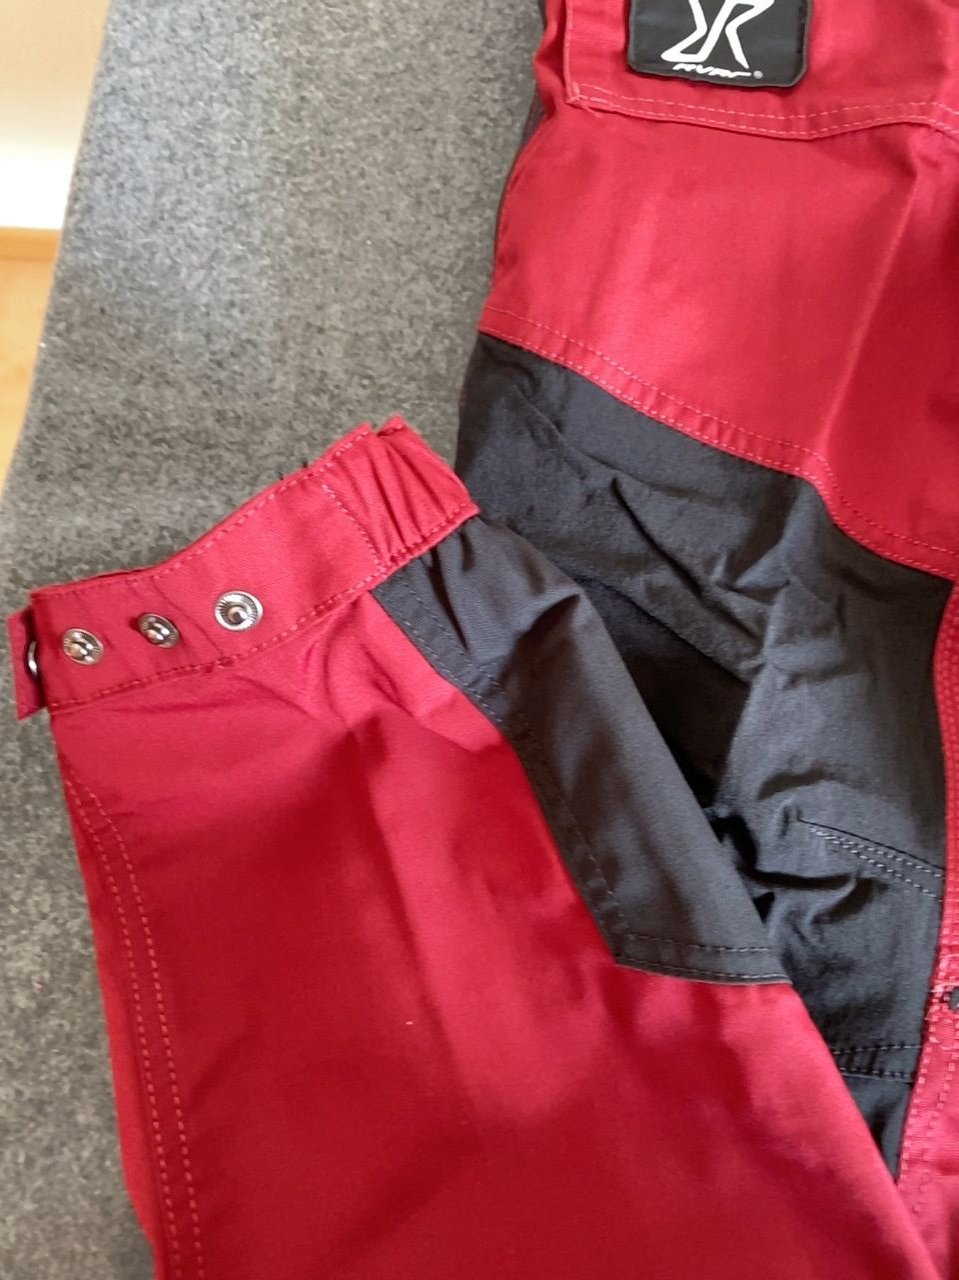 Pánské outdoorové kalhoty RVRC Velikost XL/42